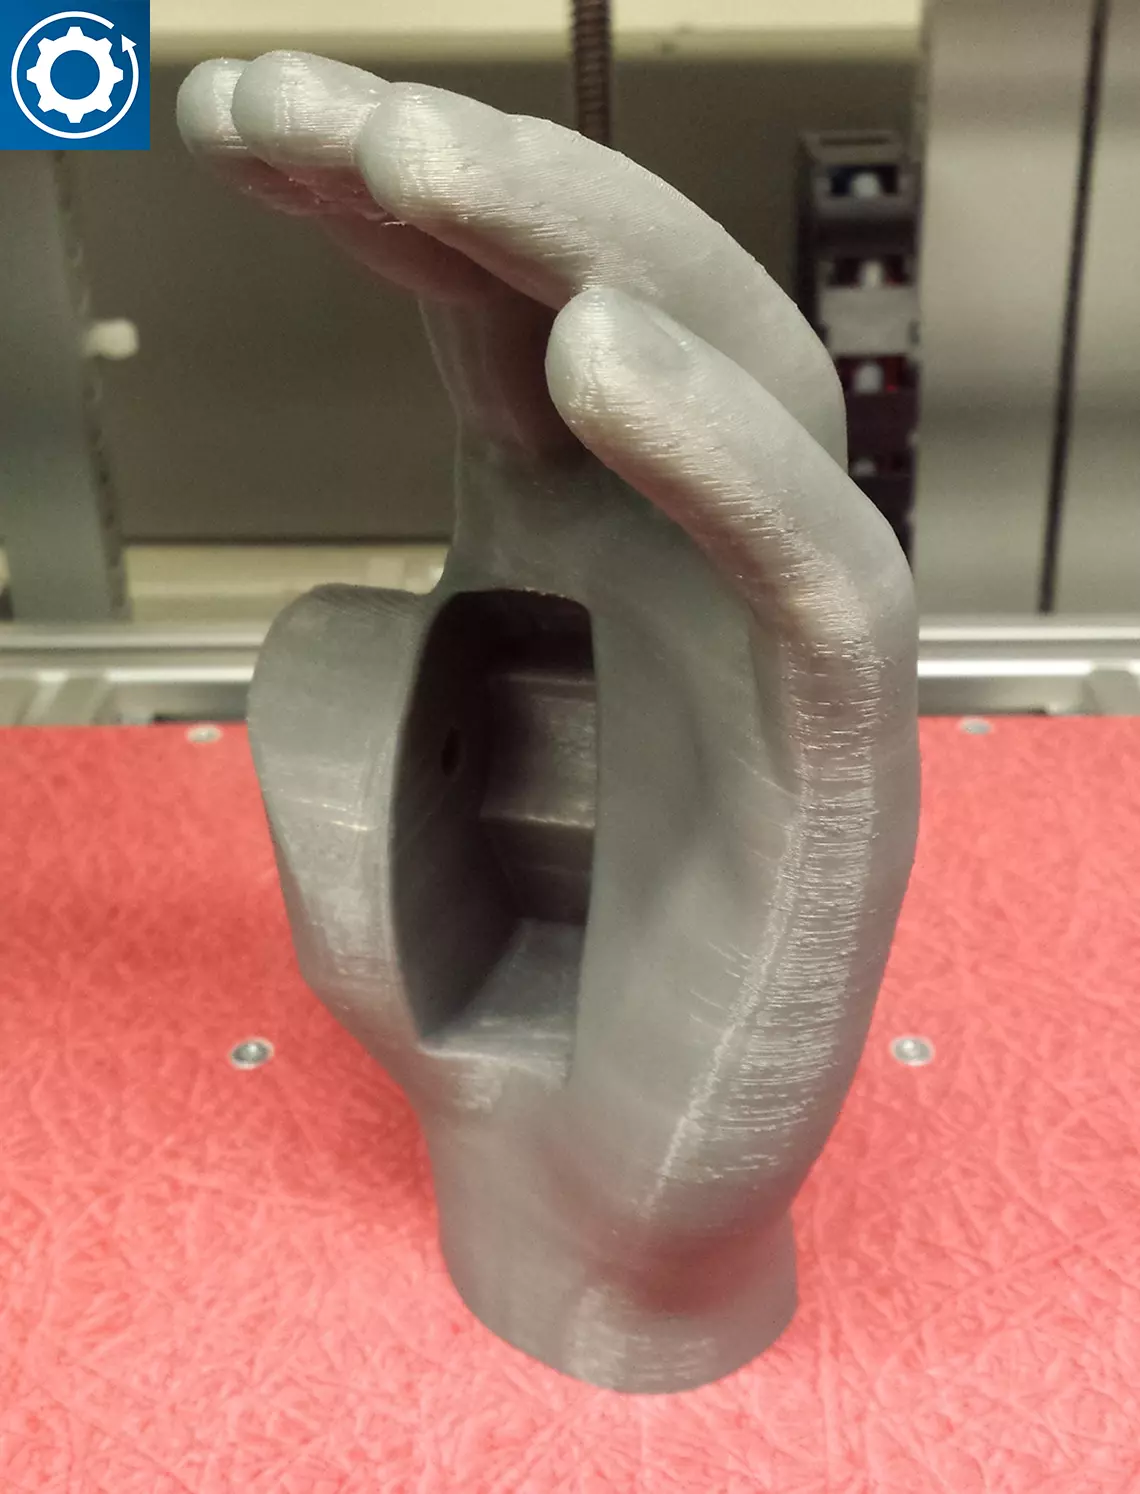 Mit 3D-Drucker erstellte Handprothese